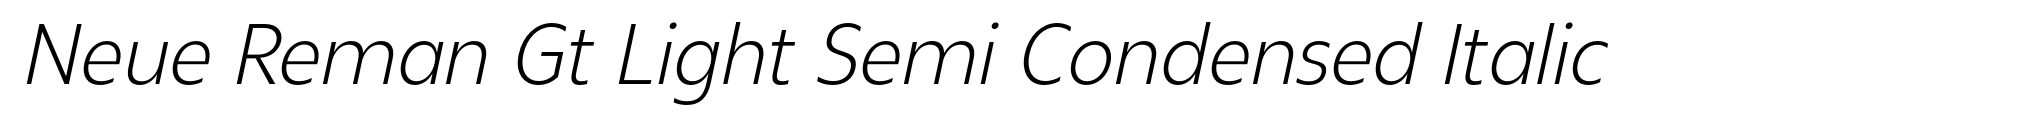 Neue Reman Gt Light Semi Condensed Italic image